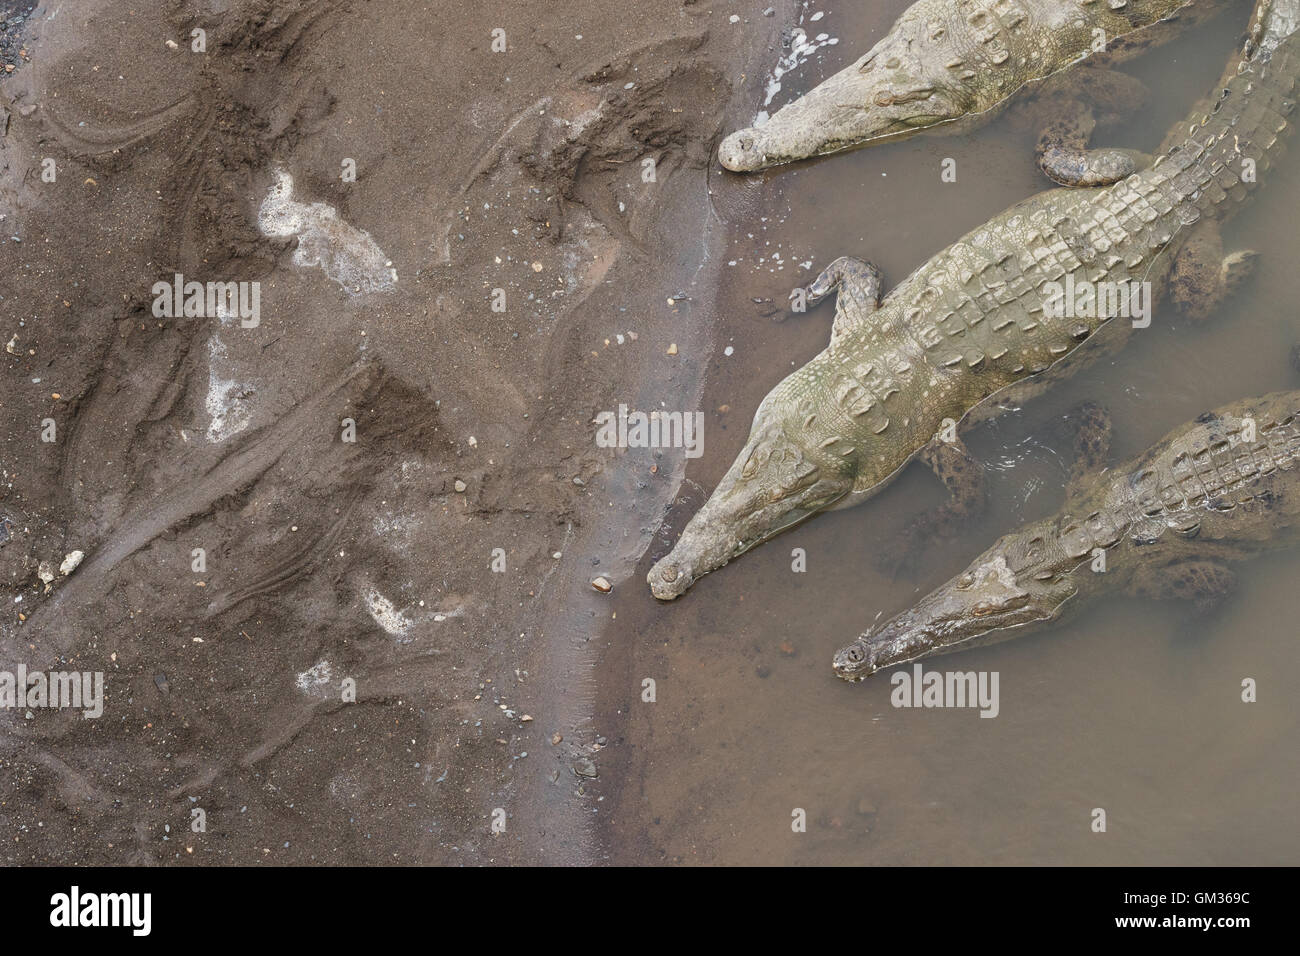 American crocodiles ( Crocodylus acutus ) in the Tarcoles river, Costa Rica, Central America Stock Photo